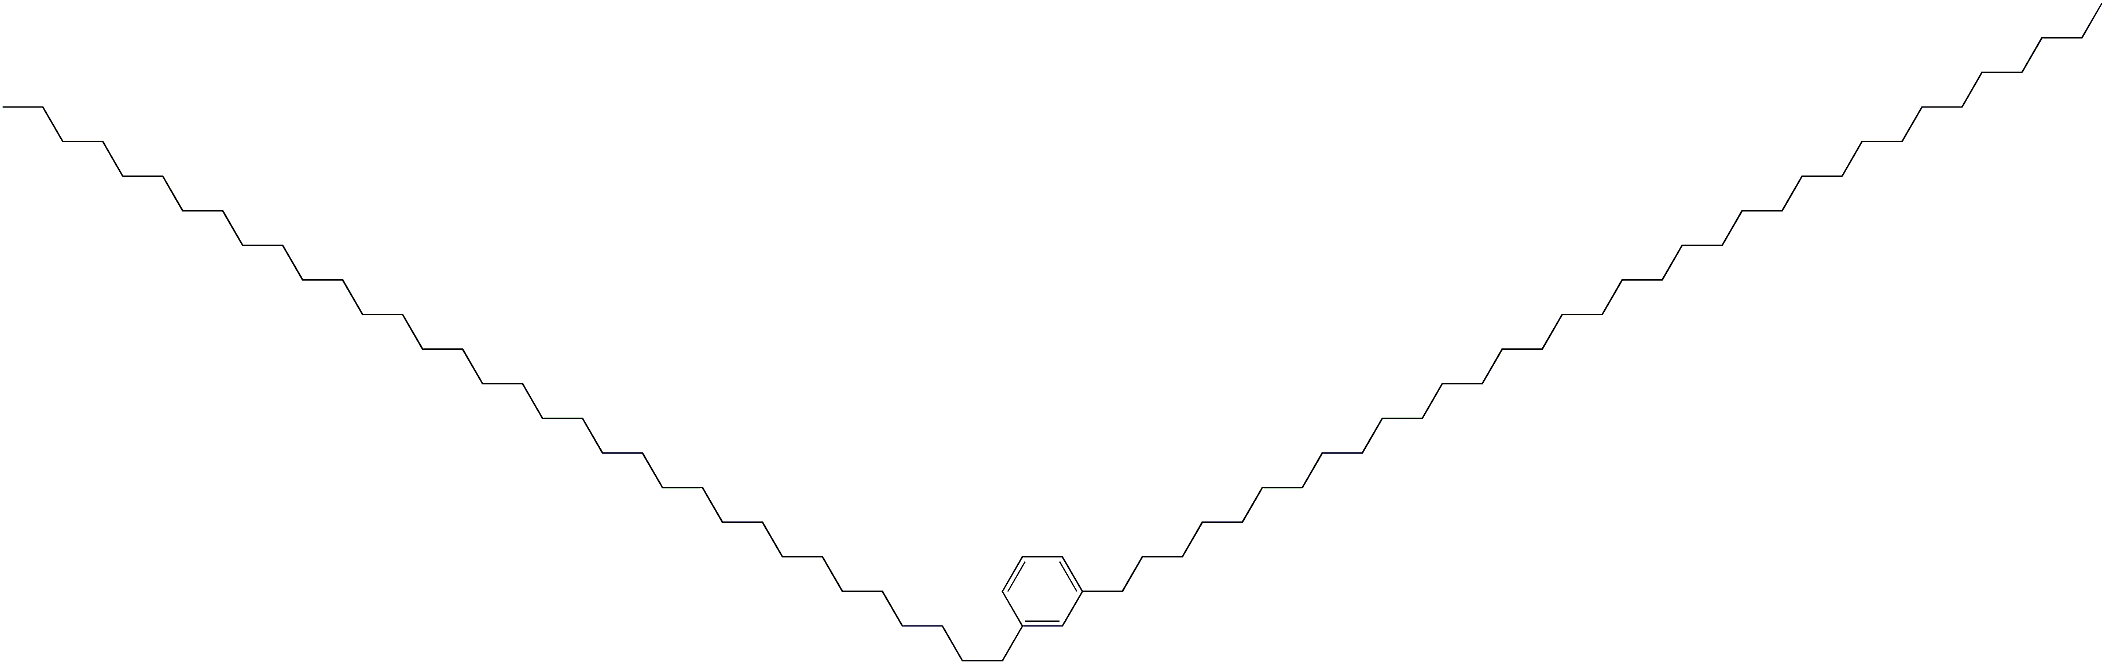 1,3-Di(tetratriacontan-1-yl)benzene|